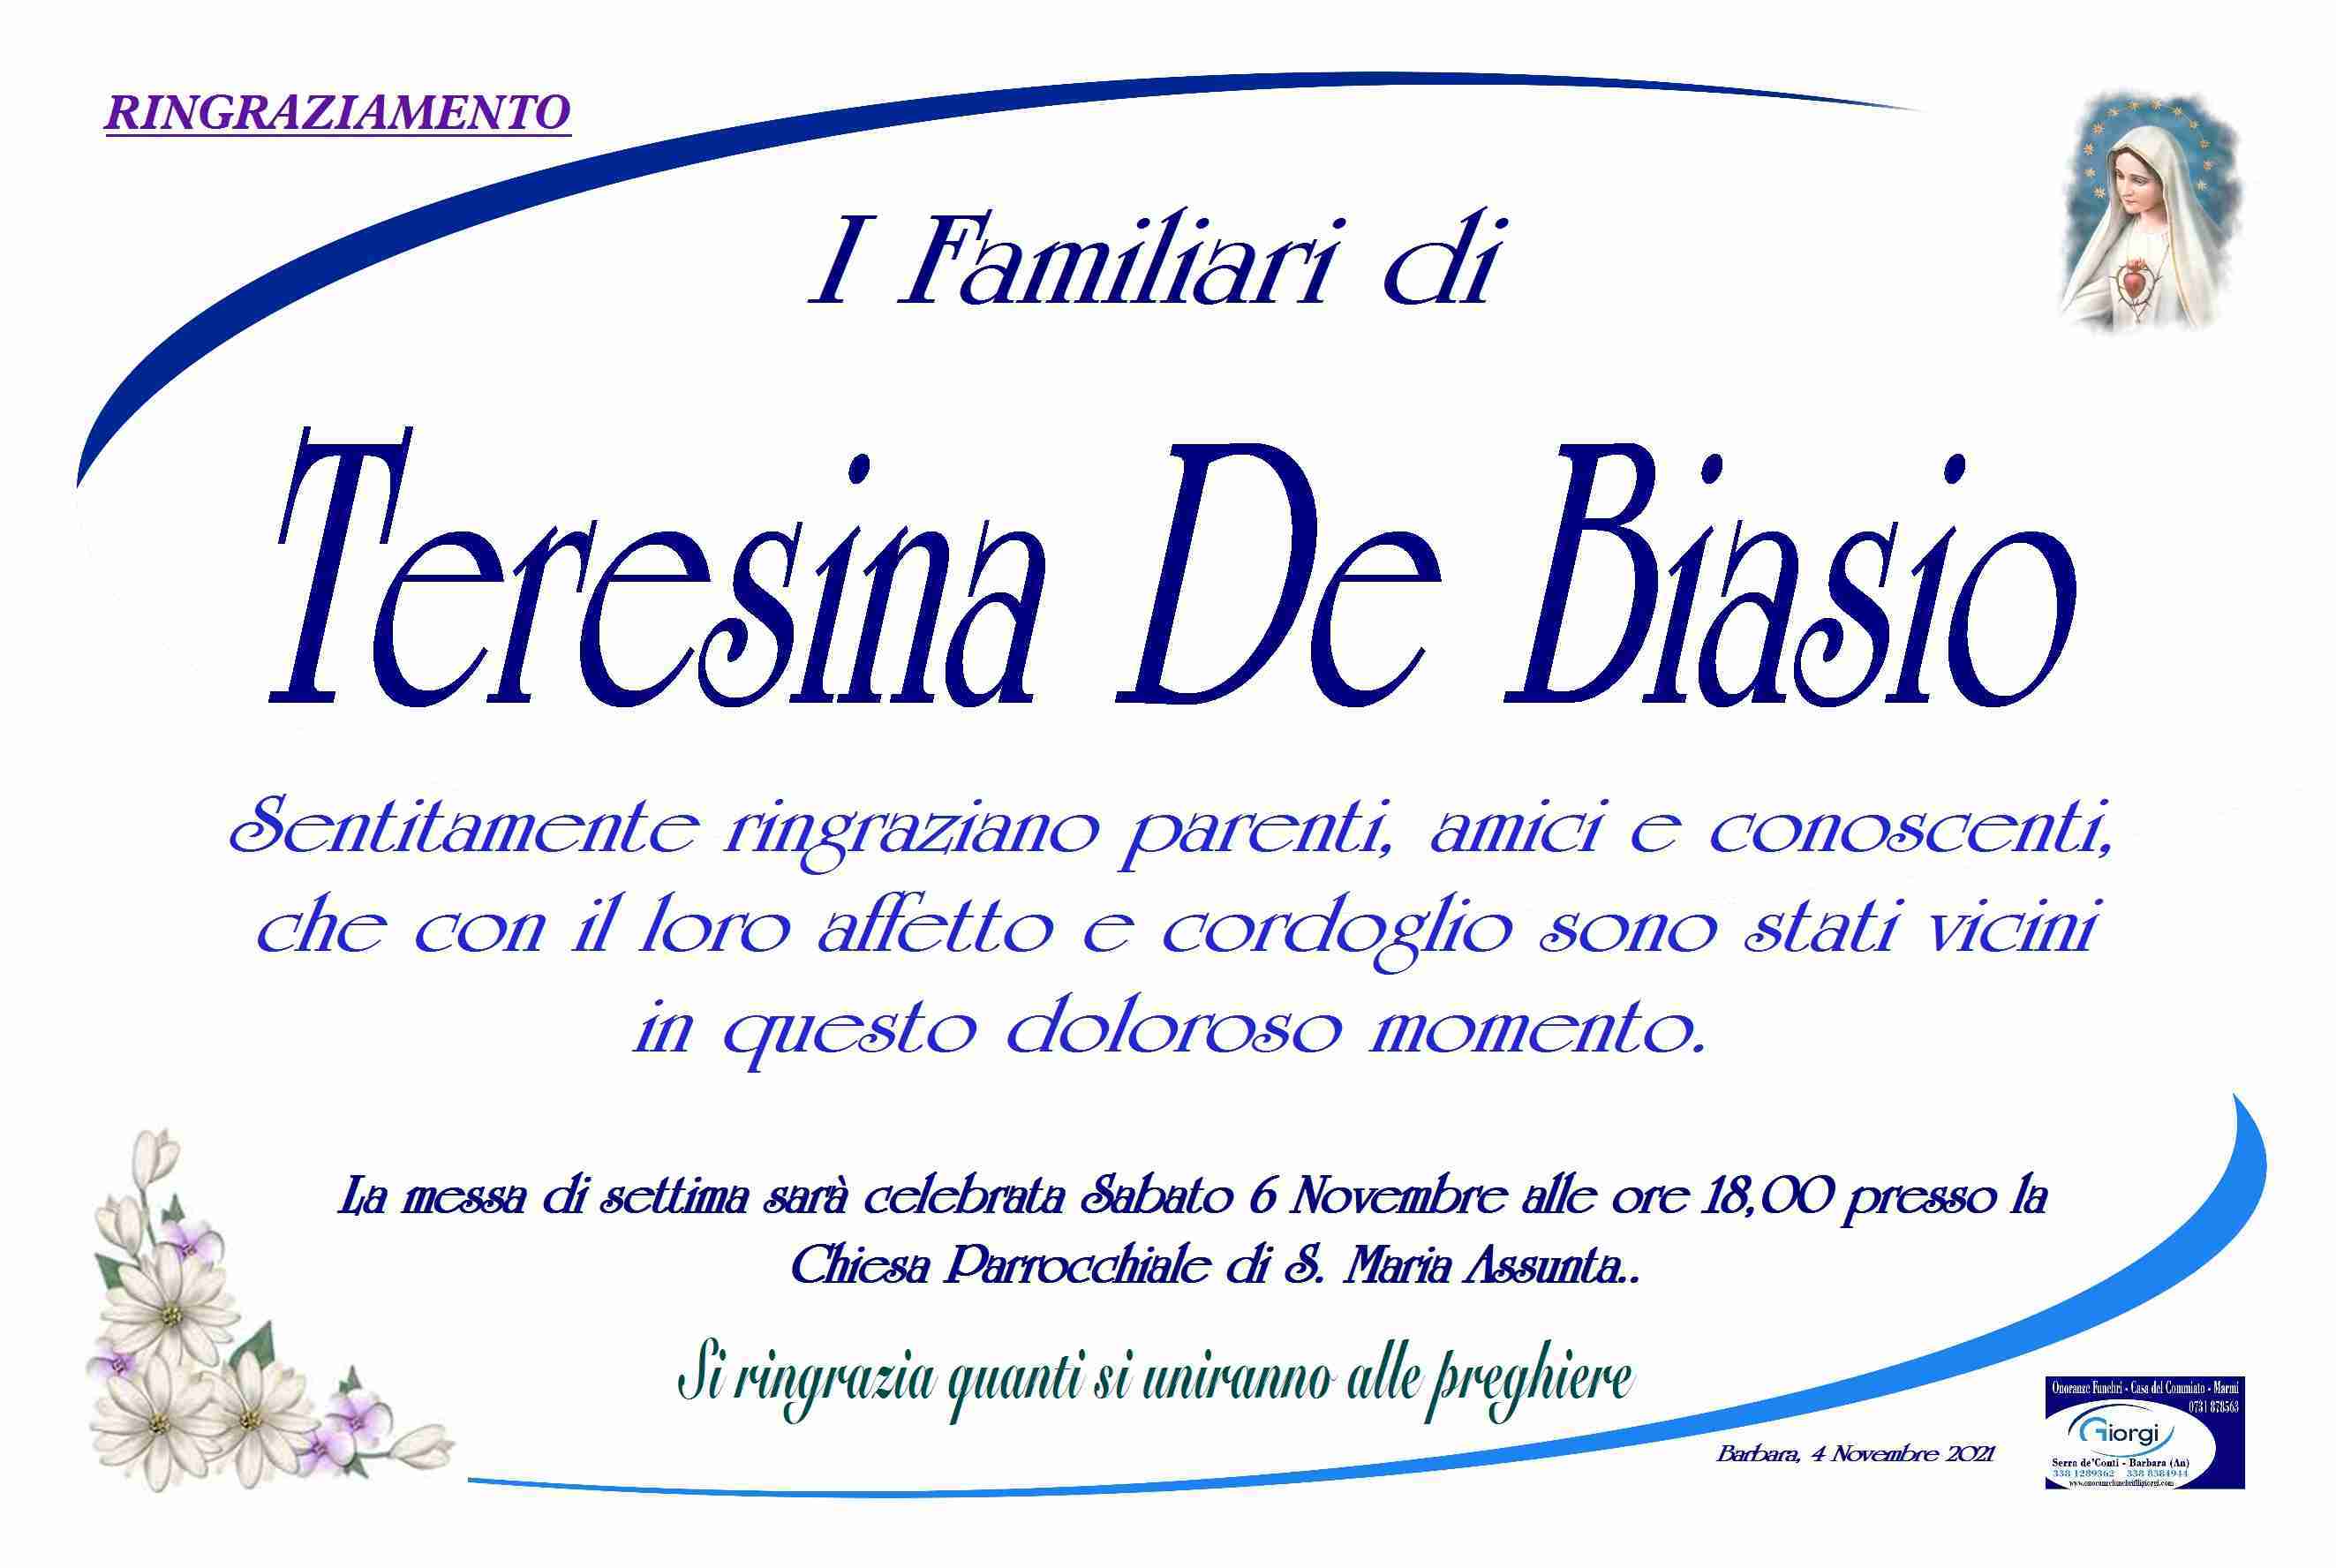 Teresina De Biasio